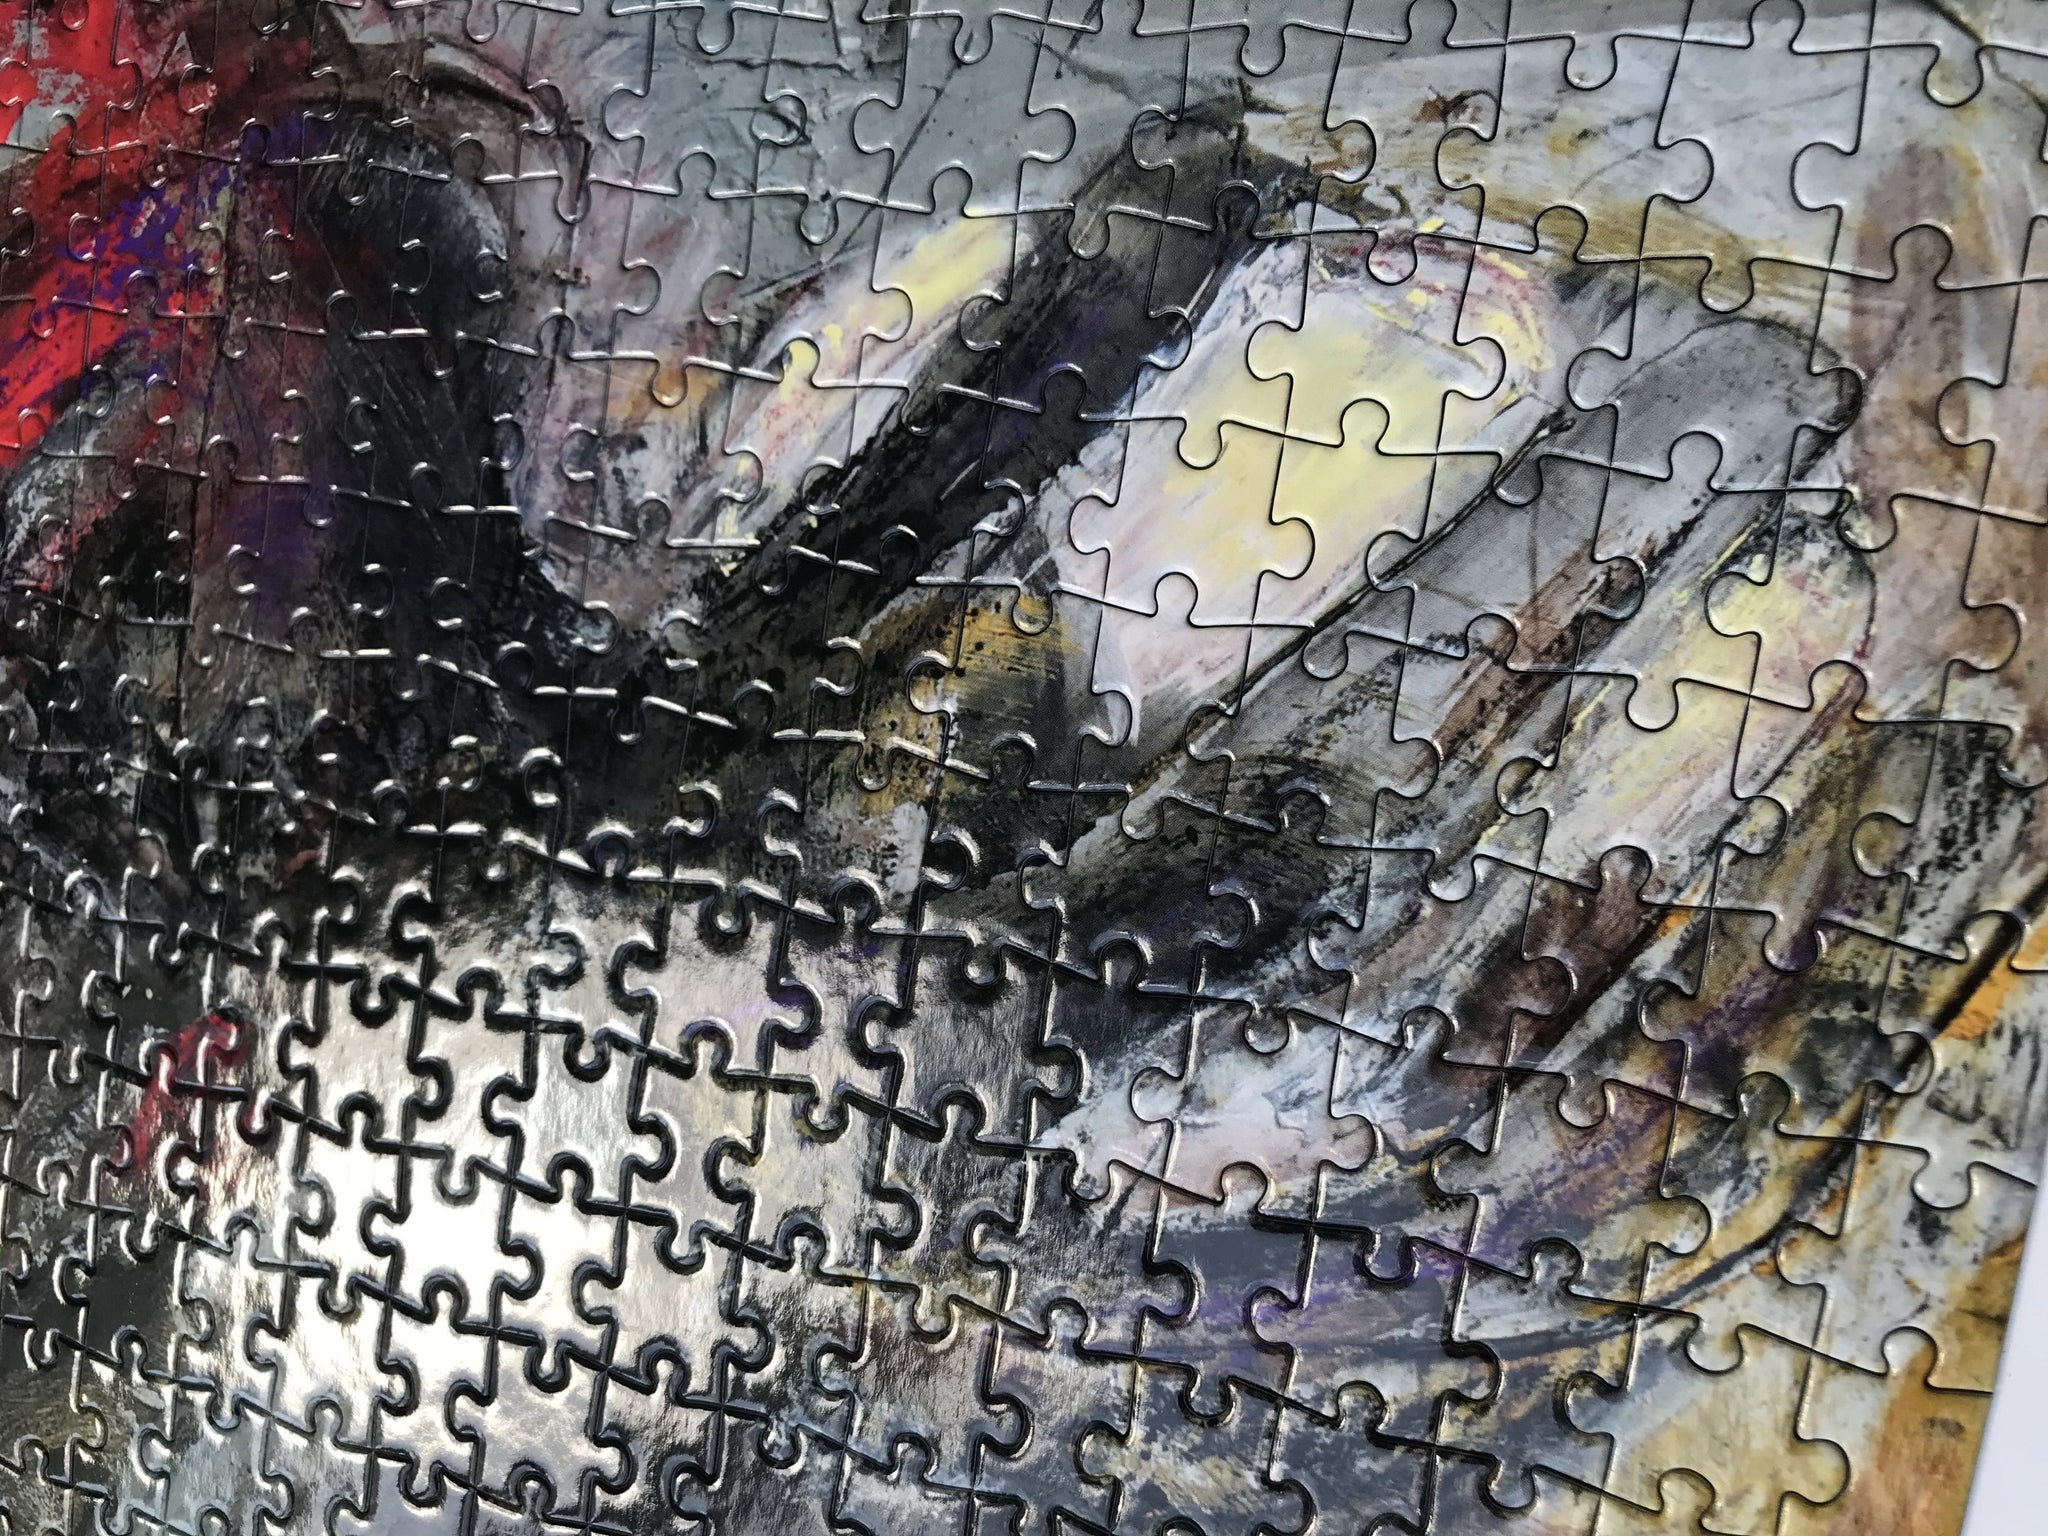 Artist Bruno Ceccobelli Collector Edition Jigsaw Puzzle